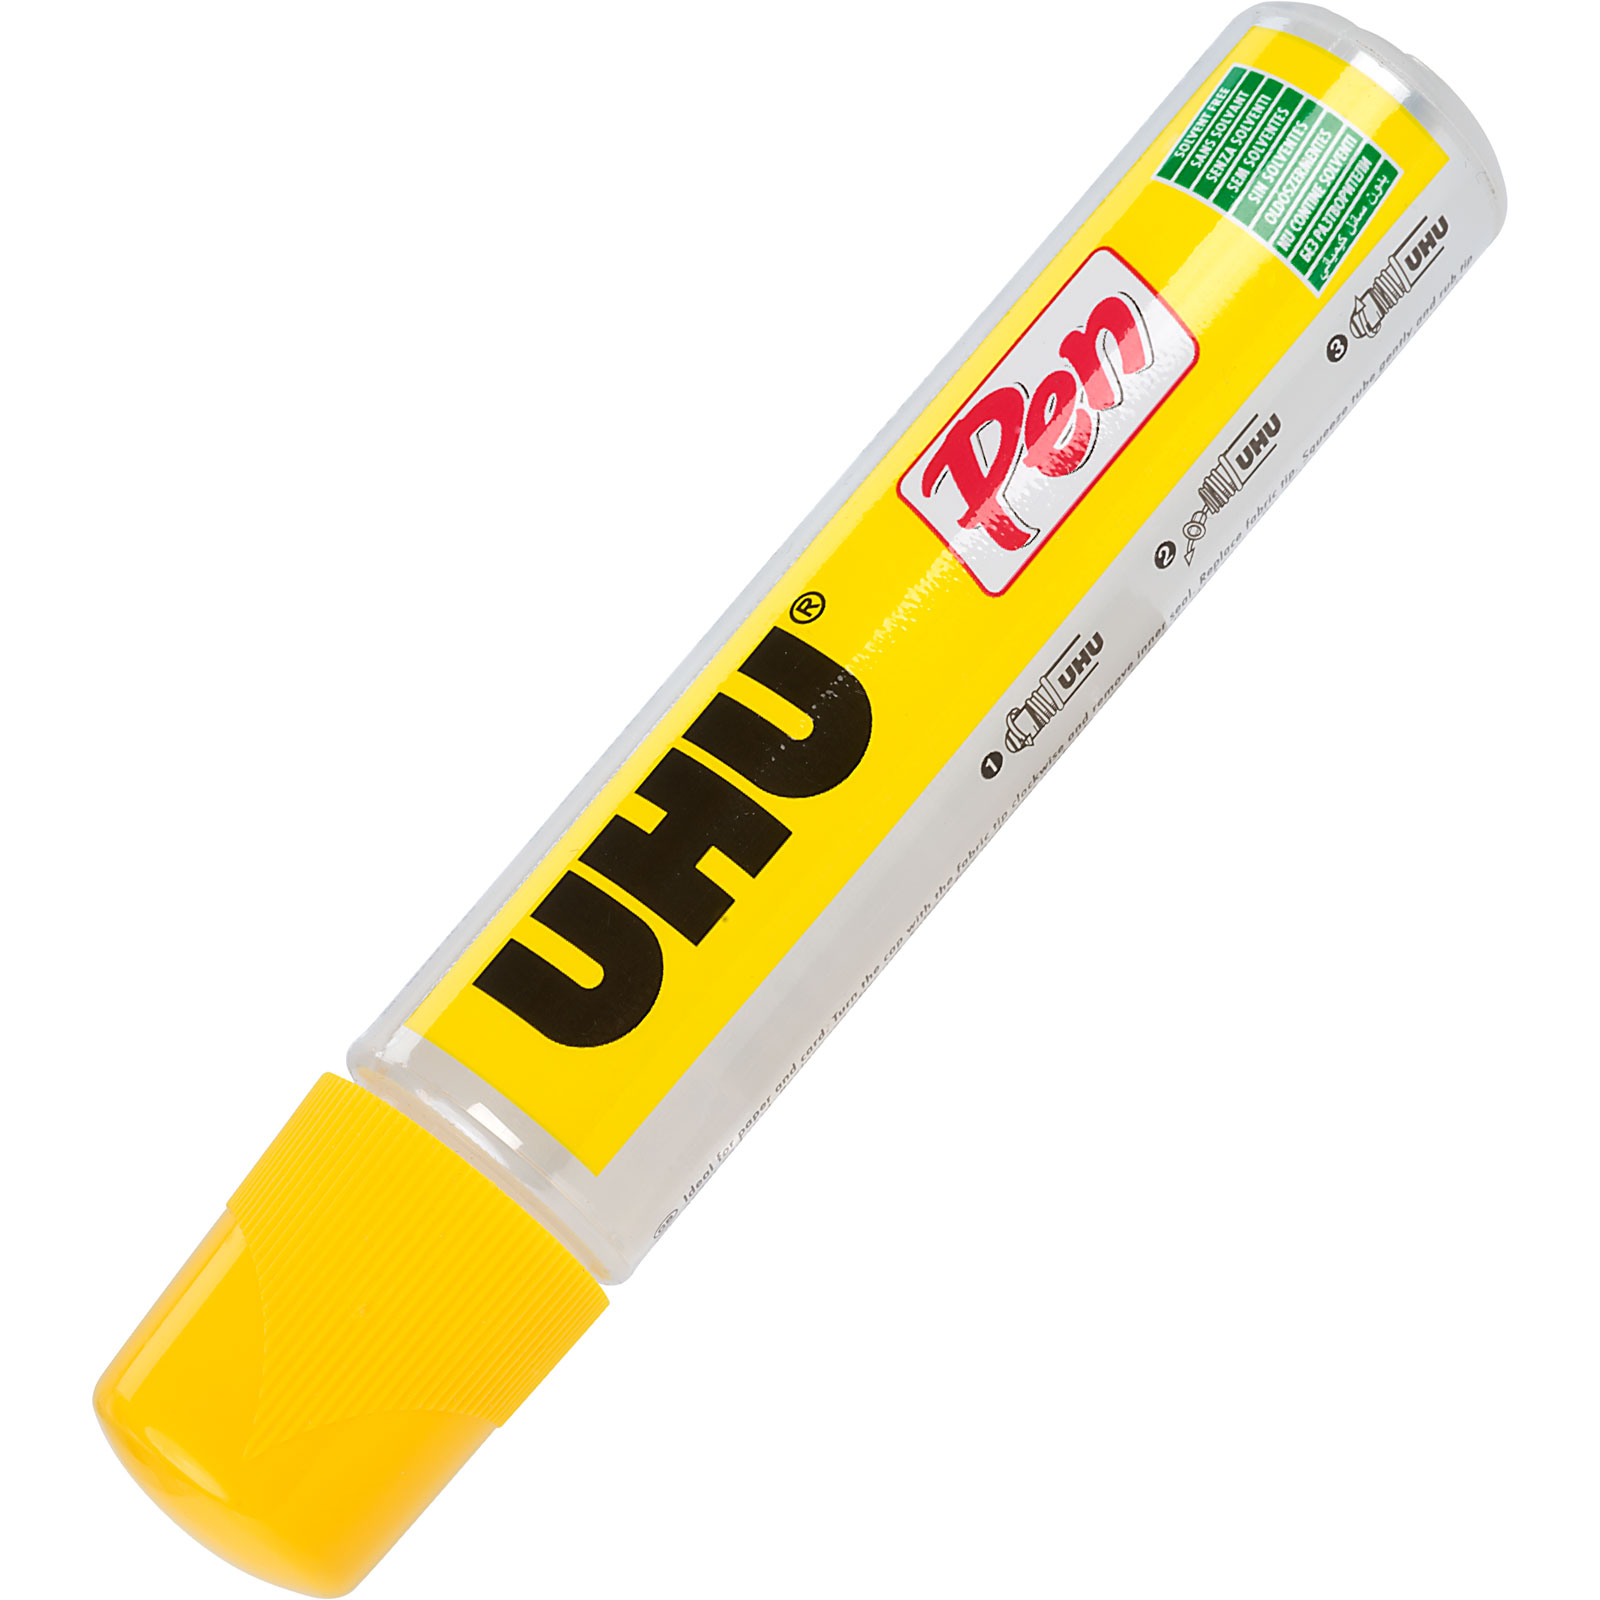 UHU 3-2606 Glue Pen 50ml - Pack of 20